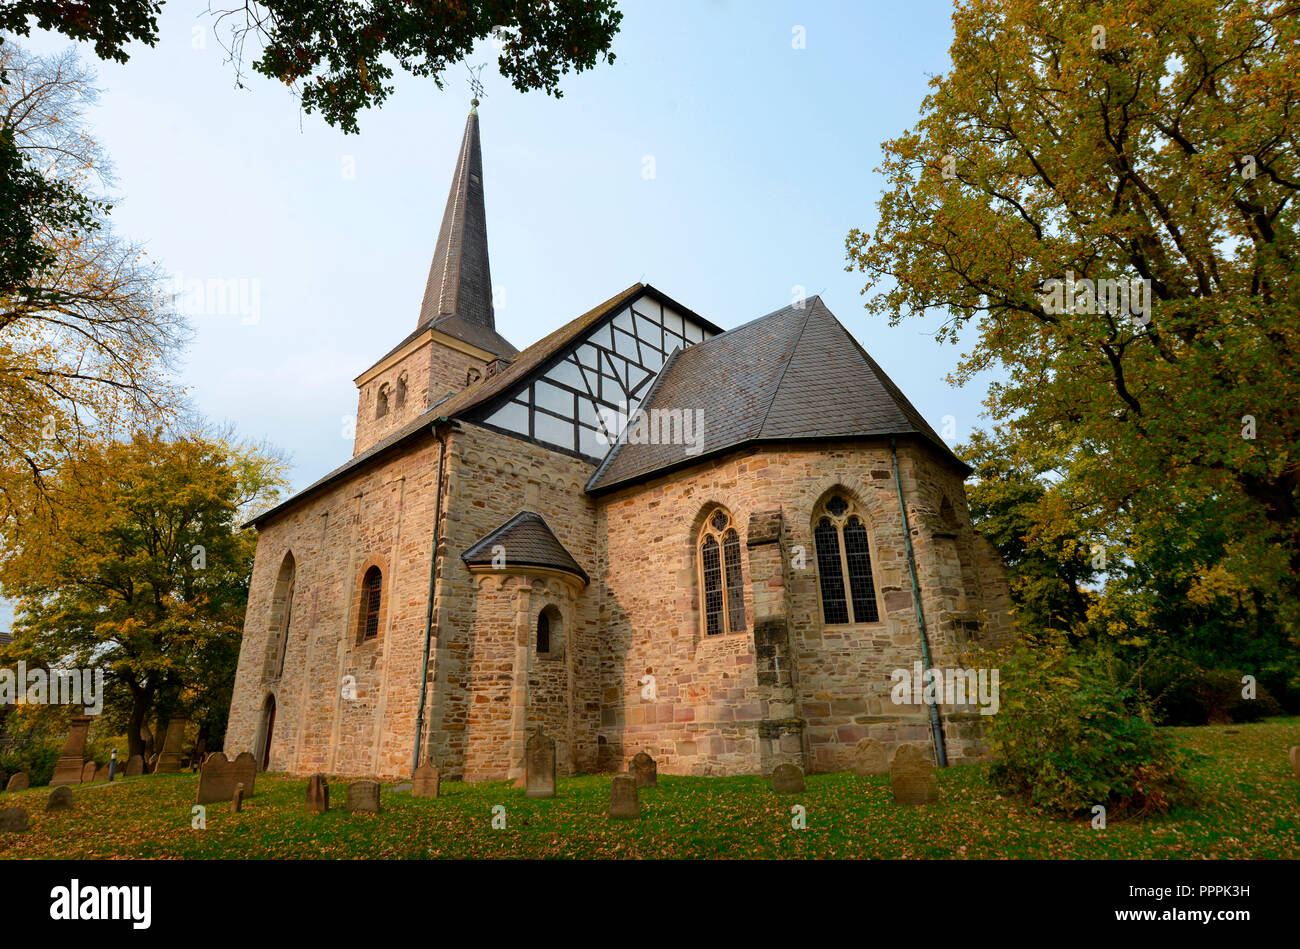 Dorfkirche Stiepel, Brockhauser Strasse, Stiepel, Bochum, Nordrhein-Westfalen, Deutschland Stock Photo